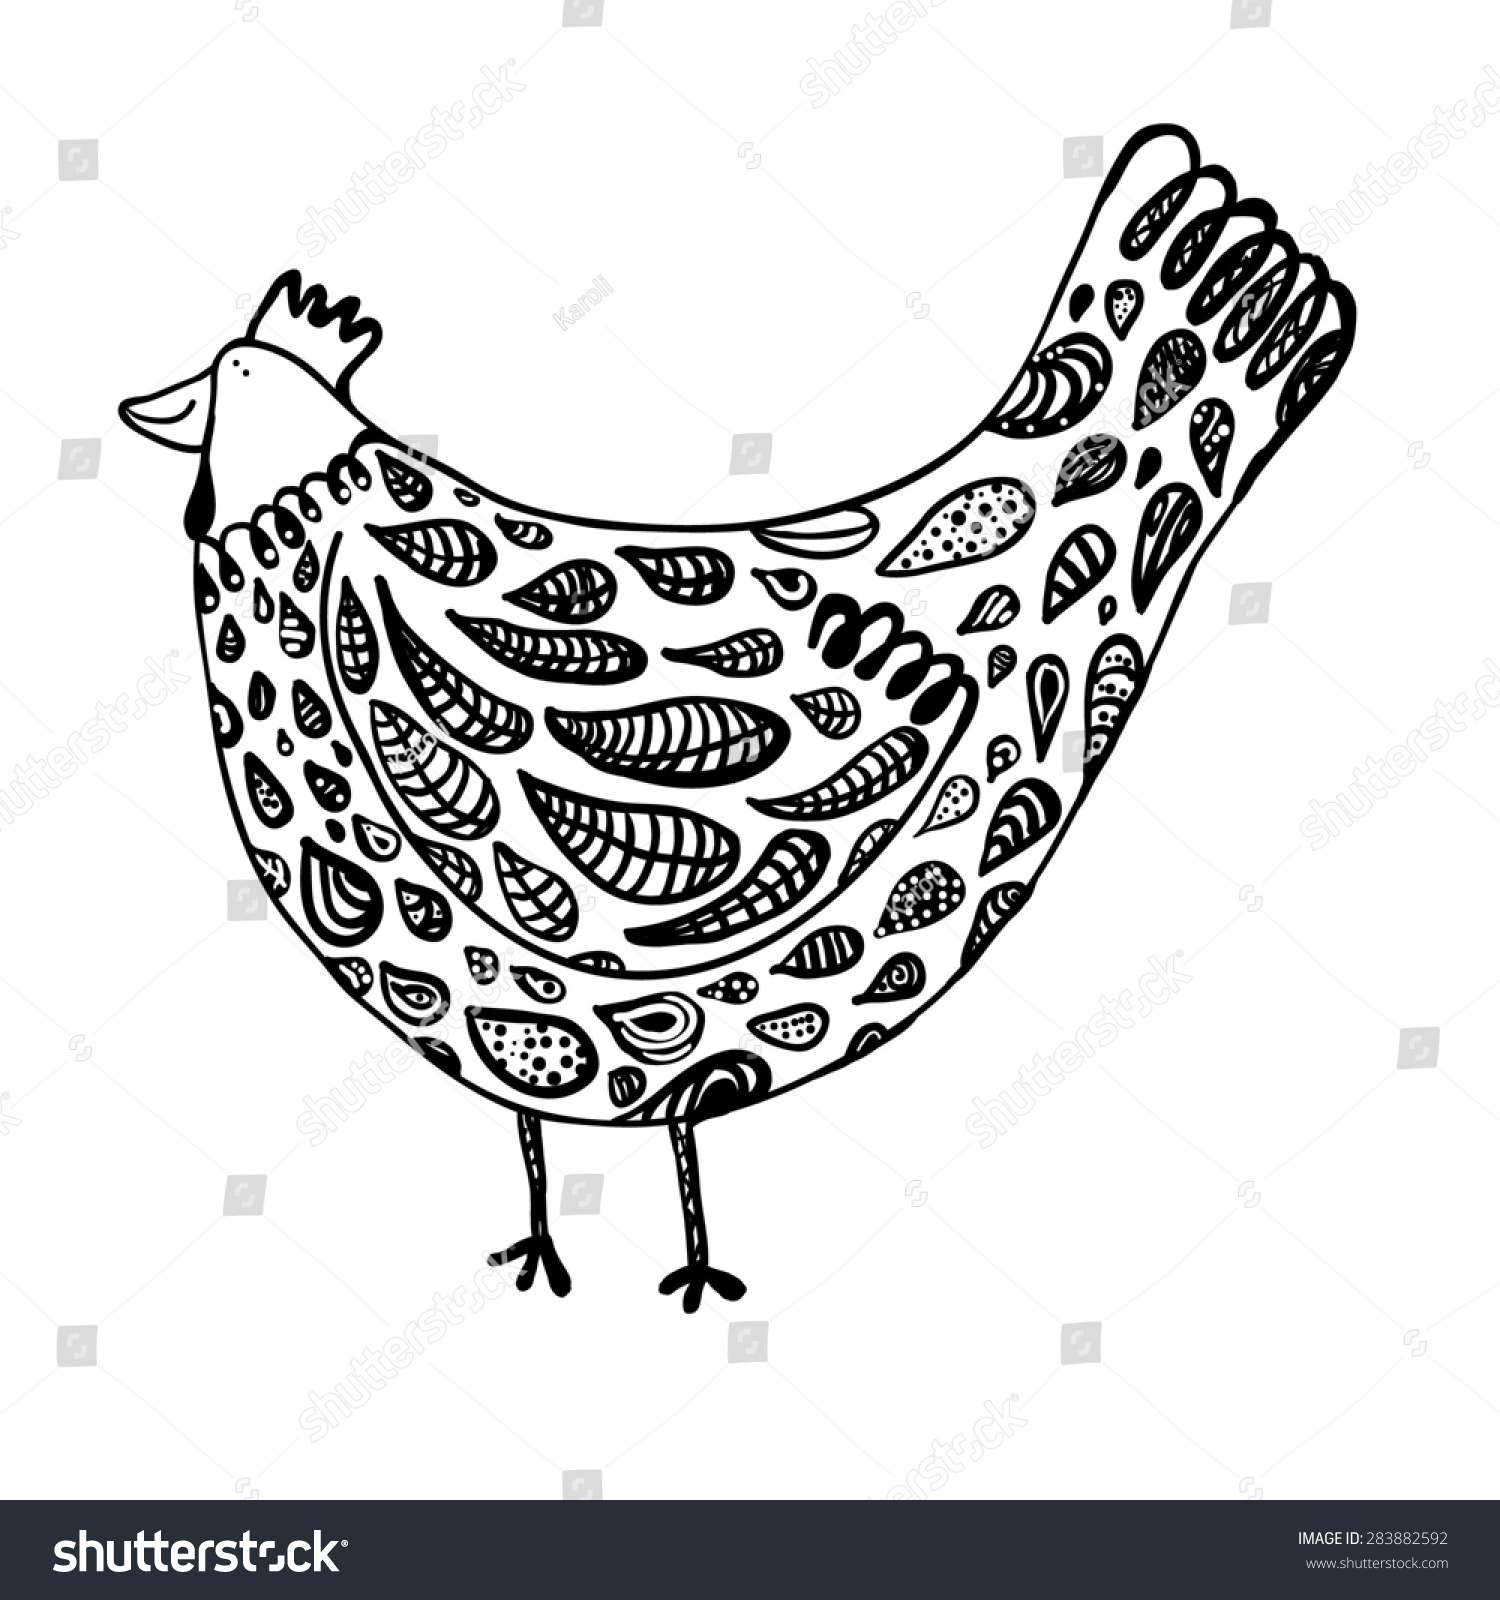 Chicken Hen Hand Drawn Black White Stock Illustration 283882592 ...